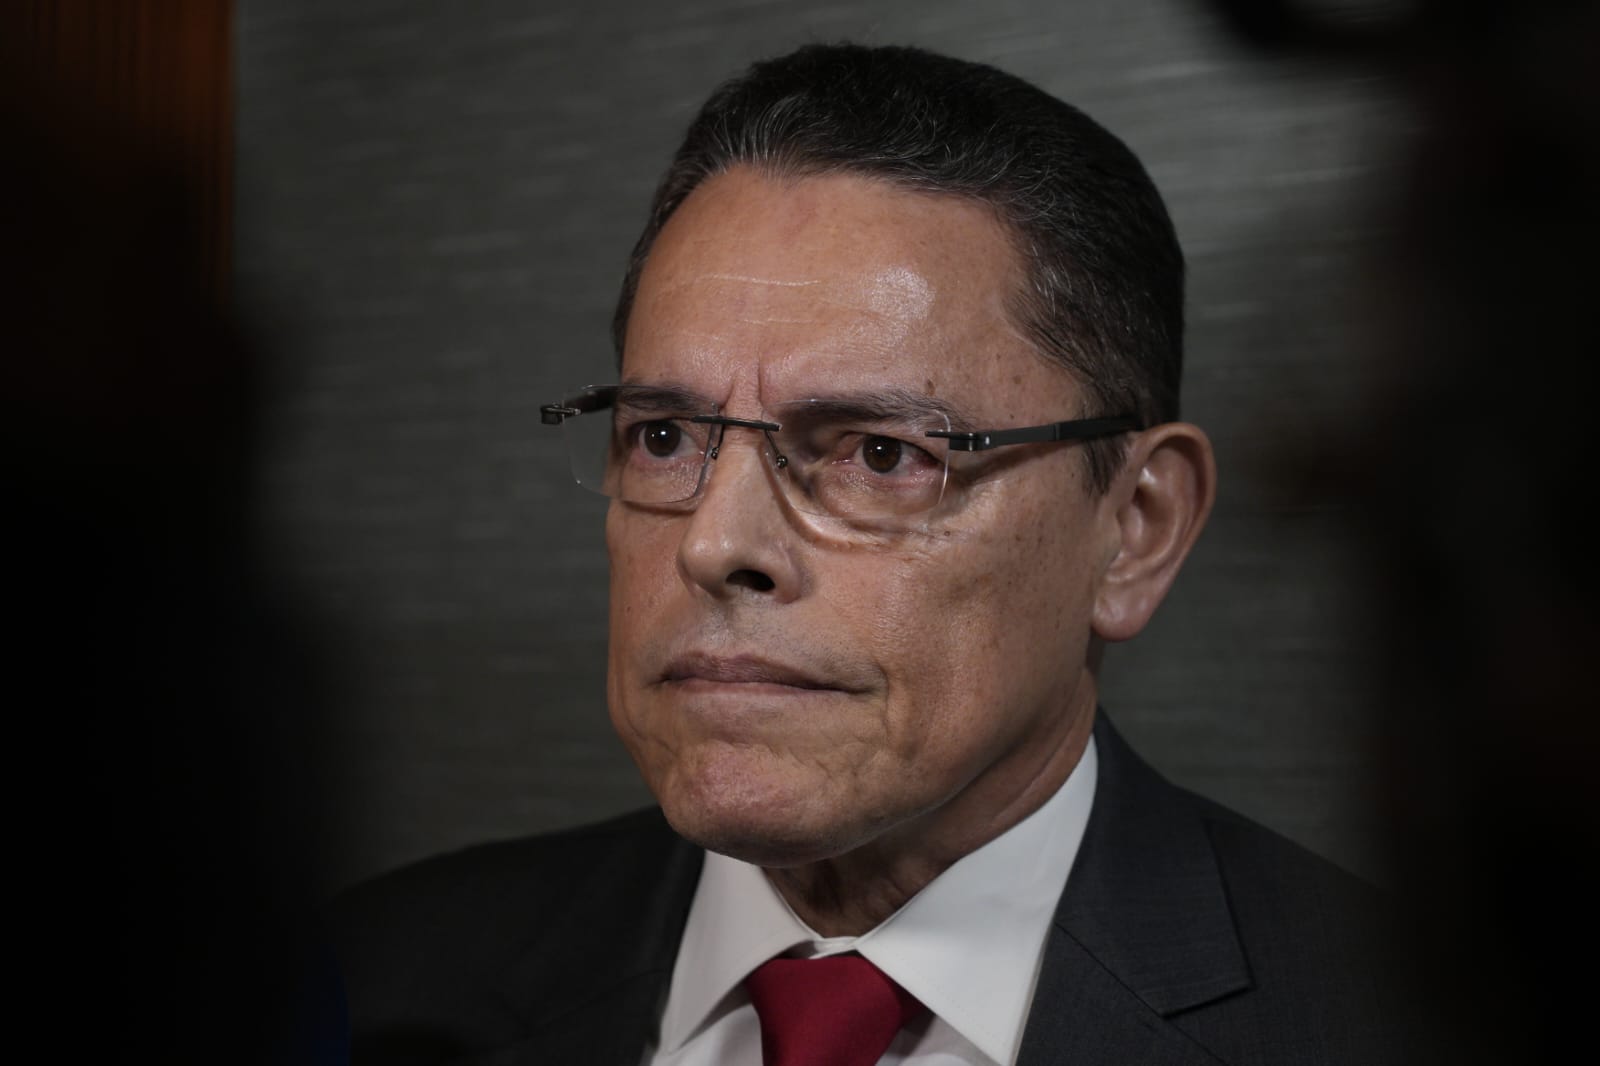 Cerrar la frontera de Darién con Colombia sí es factible, dice ministro Ábrego